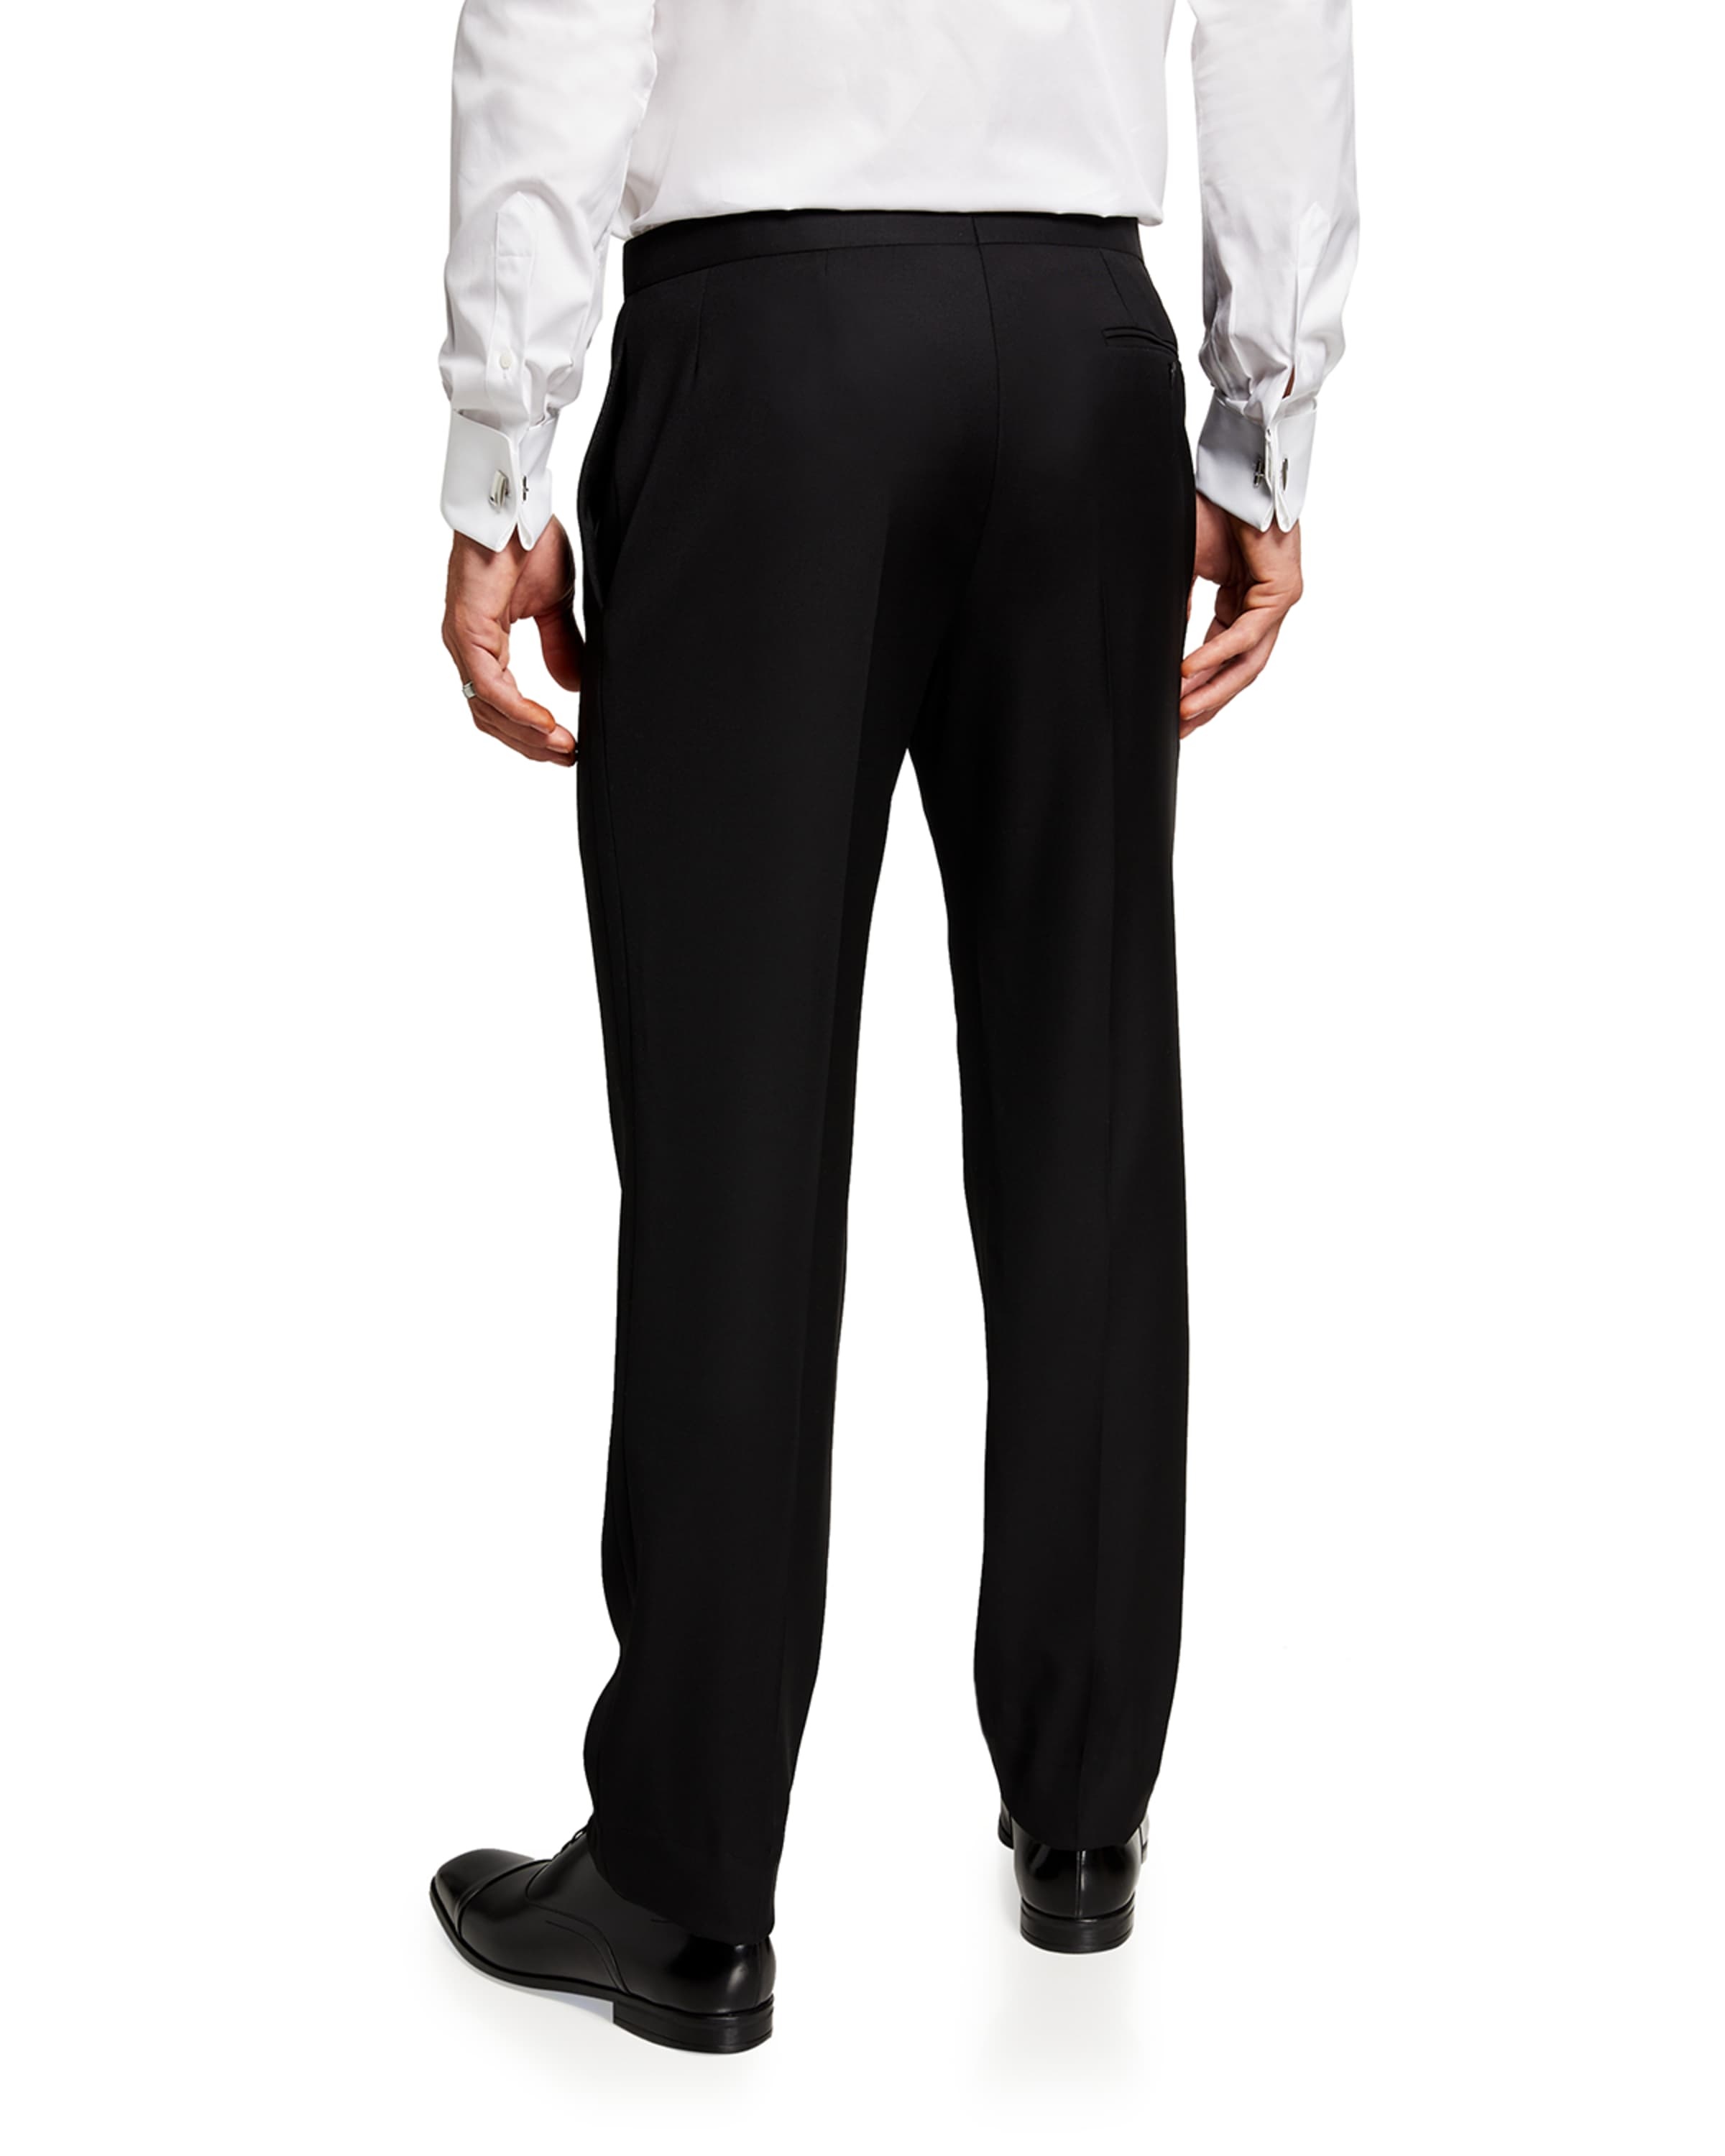 Men's Cotton Tuxedo Pants - 1